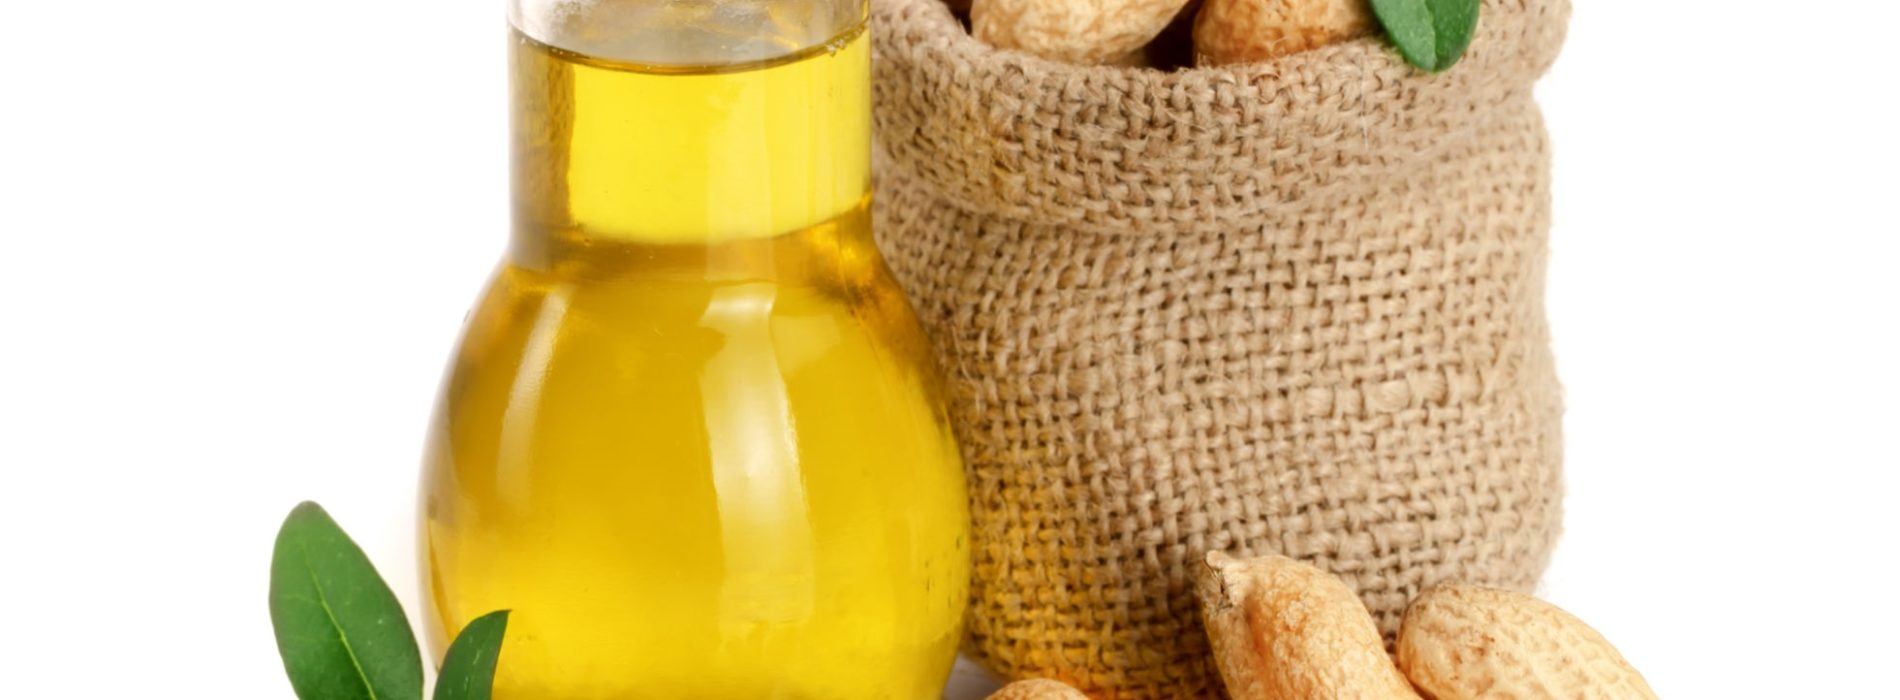 Olej arachidowy – Co zawiera, jakie ma właściwości i zastosowanie?